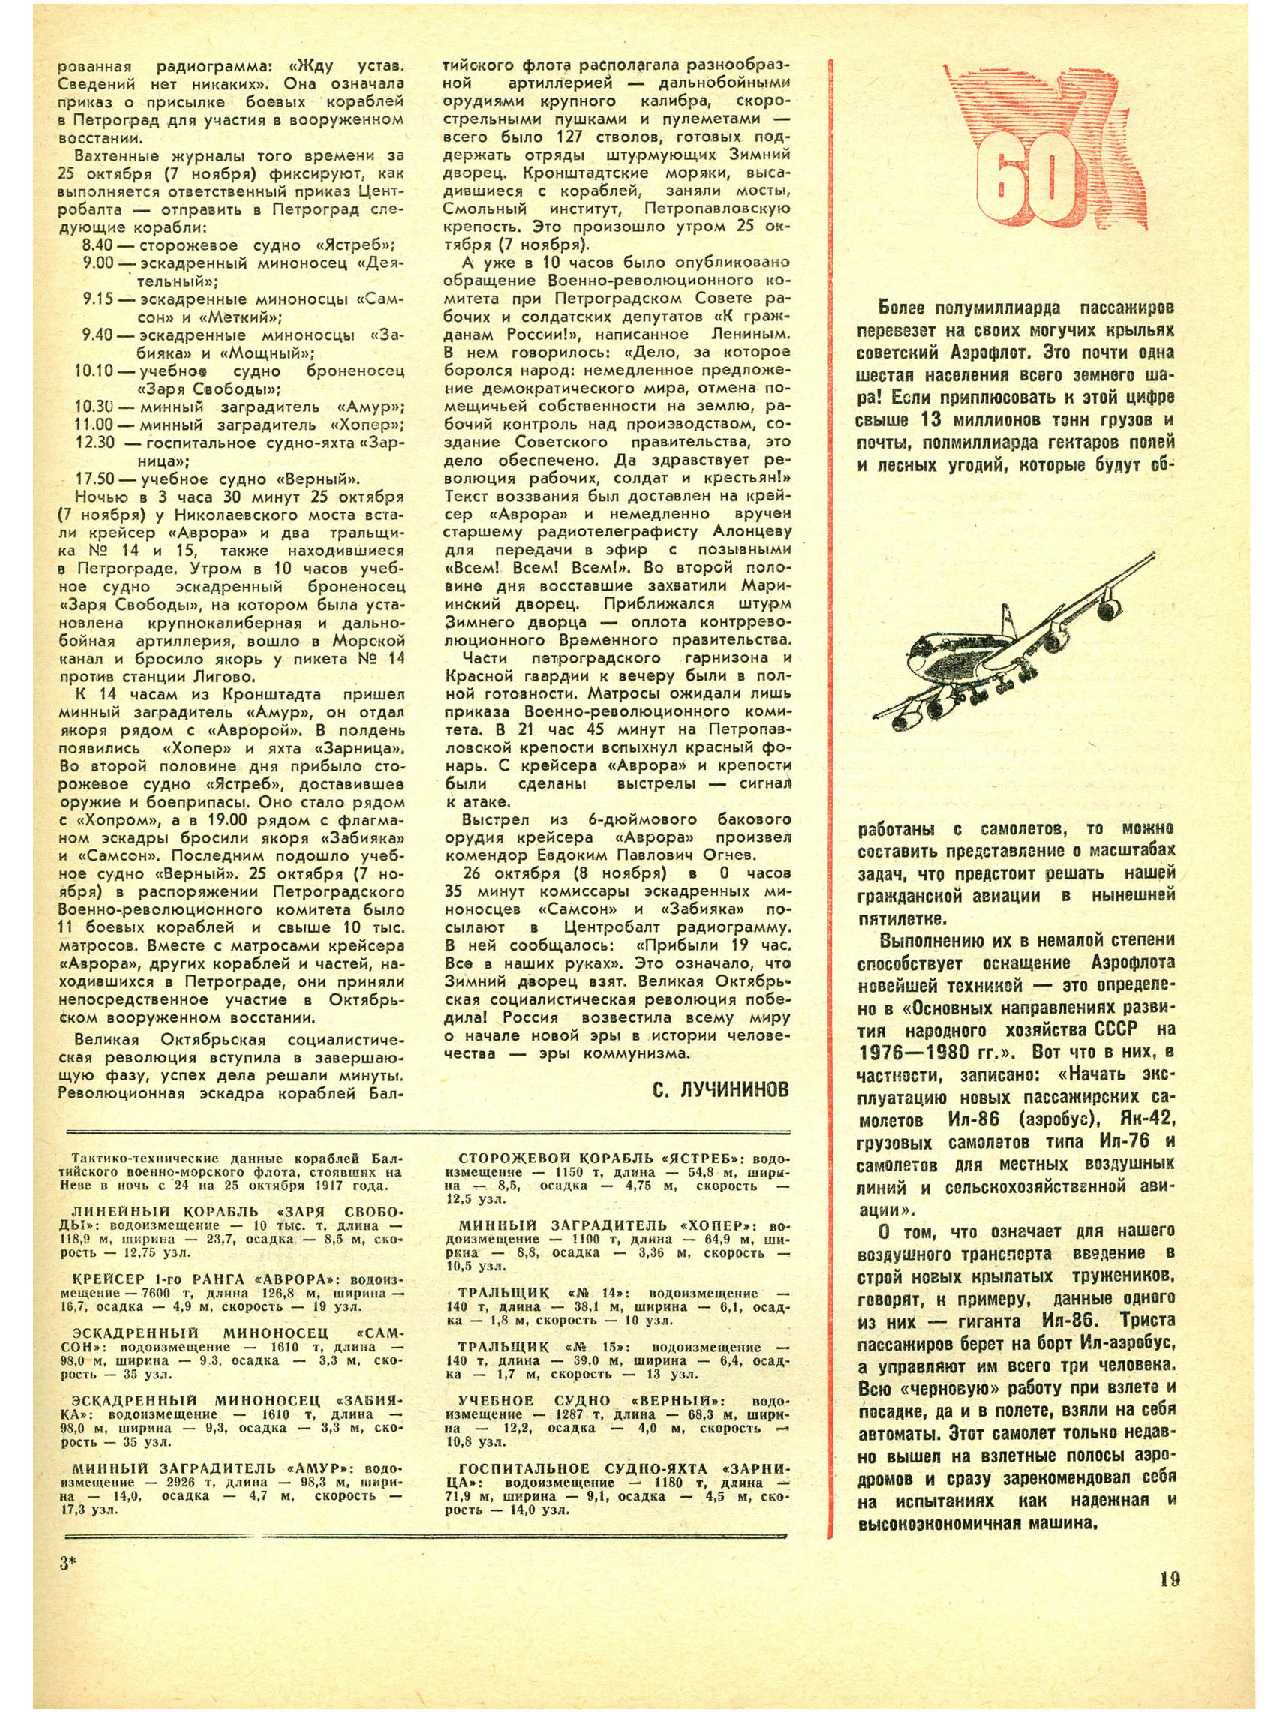 МК 11, 1977, 19 c.